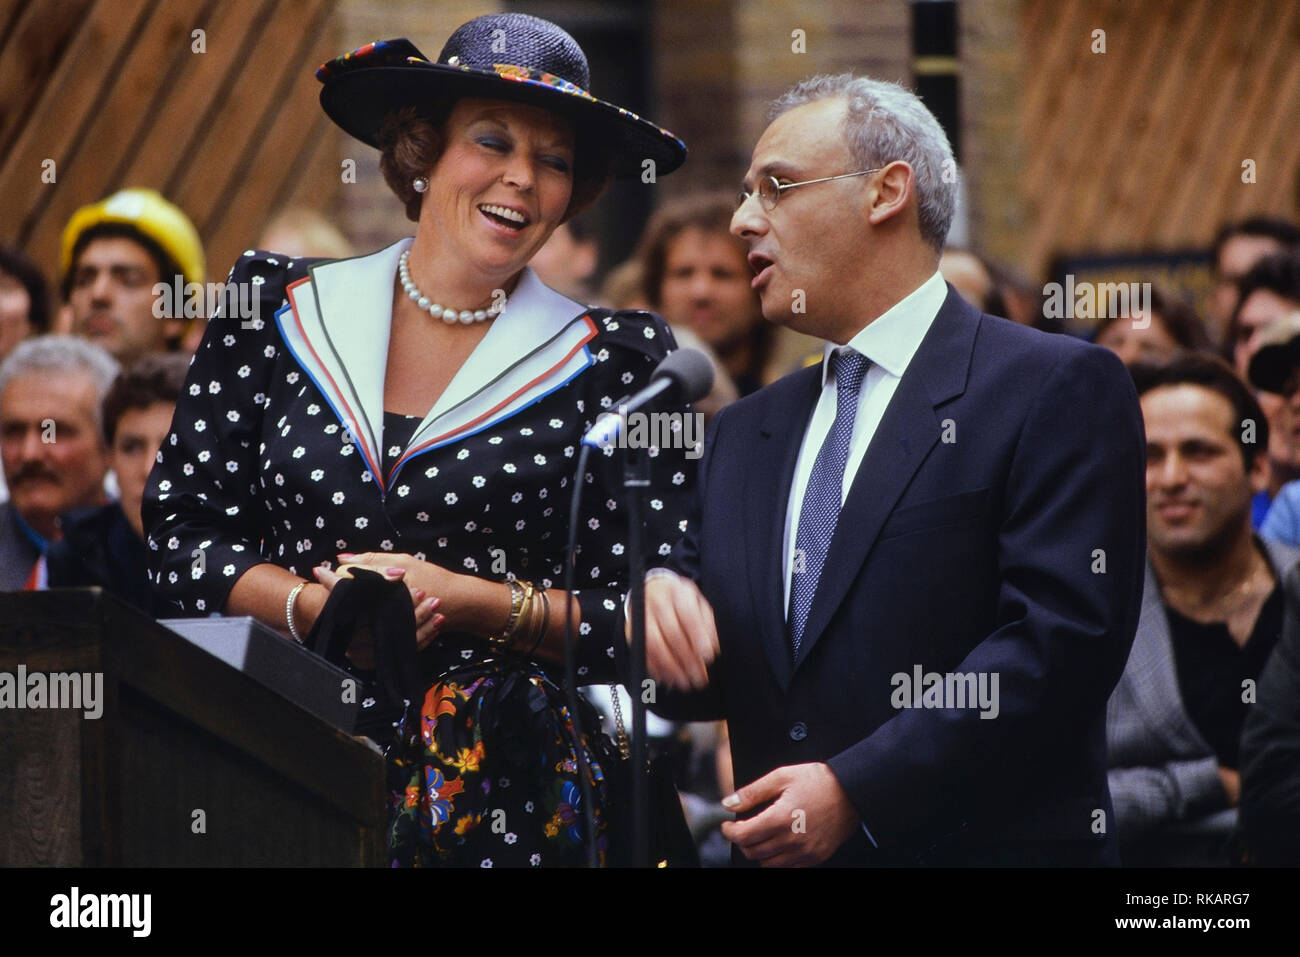 La Reina Beatriz de los Países Bajos la revelación del Seven Dials monumento, Covent Garden, Londres. Inglaterra. El 29 de junio de 1989 Foto de stock